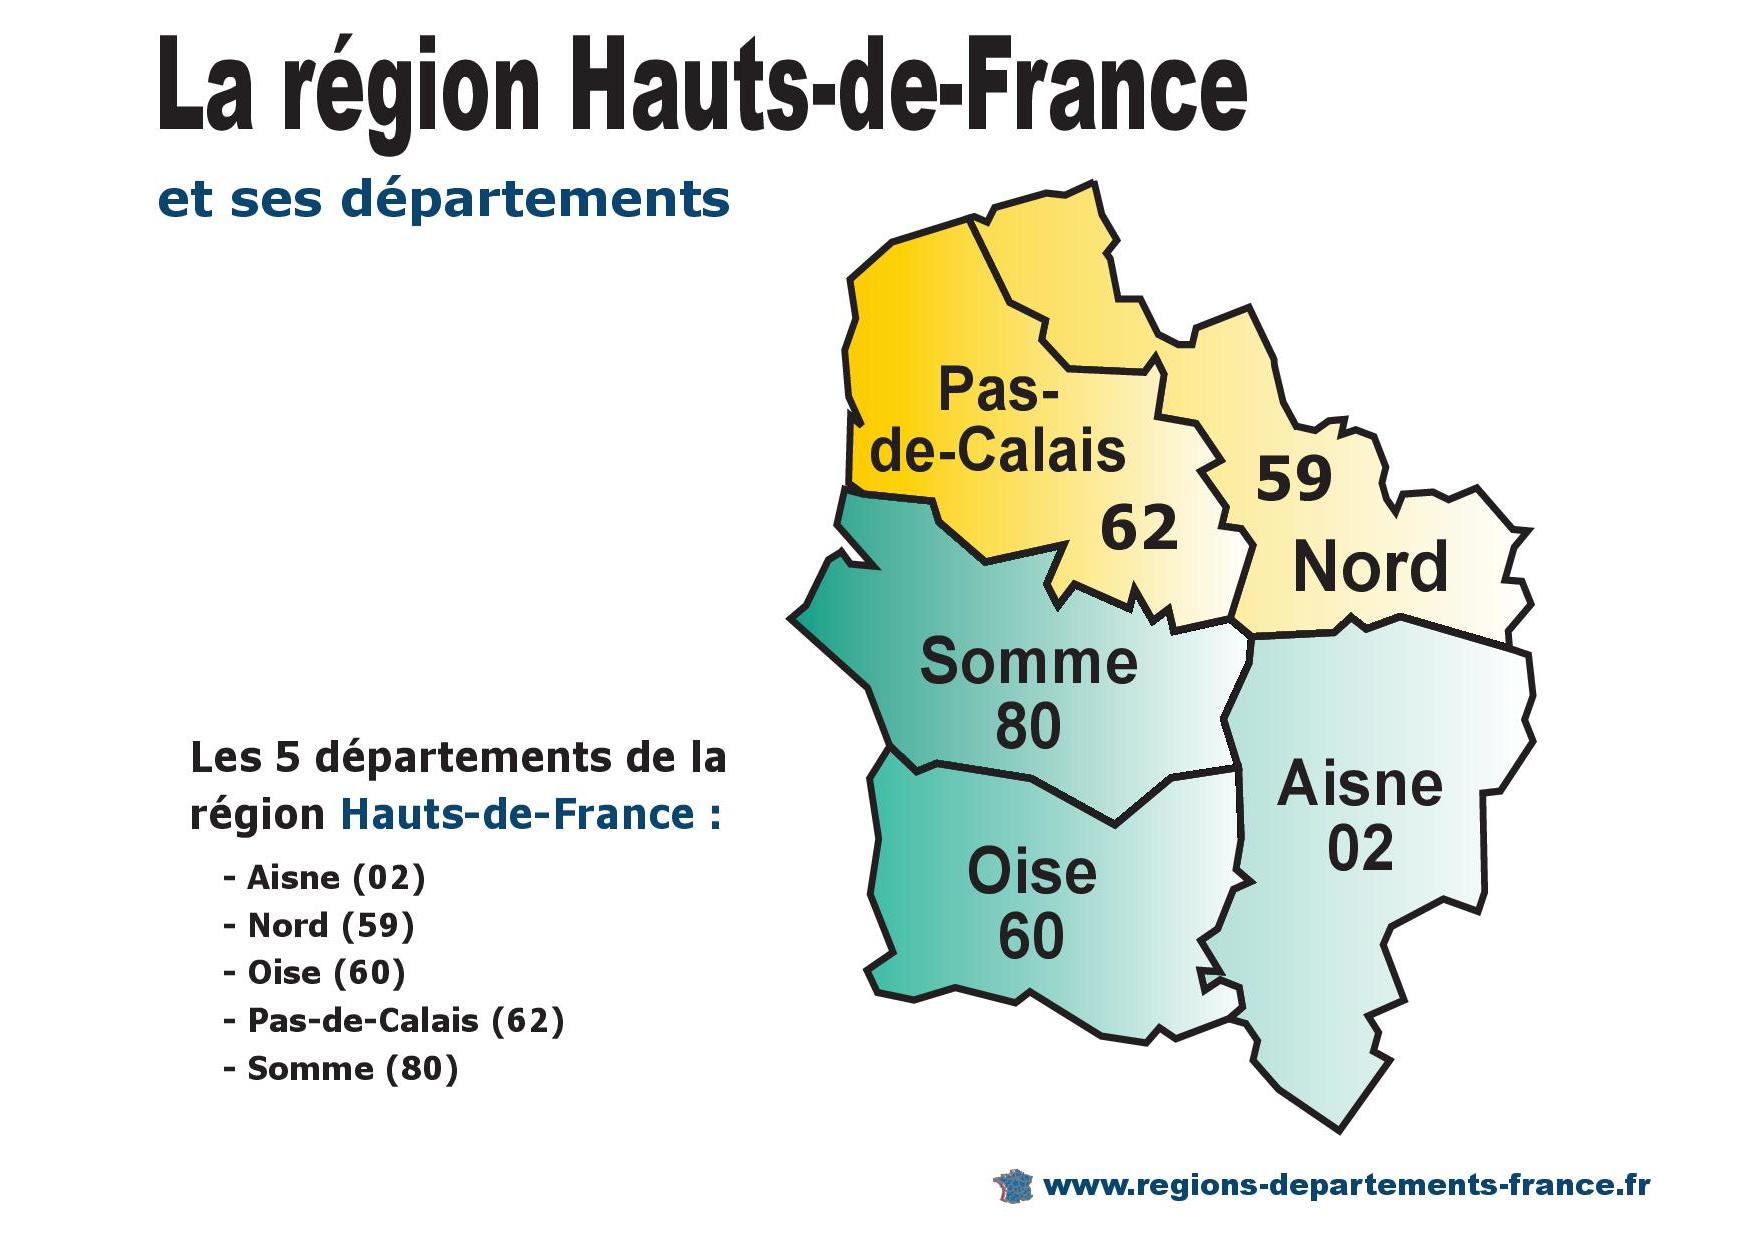 Pas-de-Calais (62), Hauts-de-France